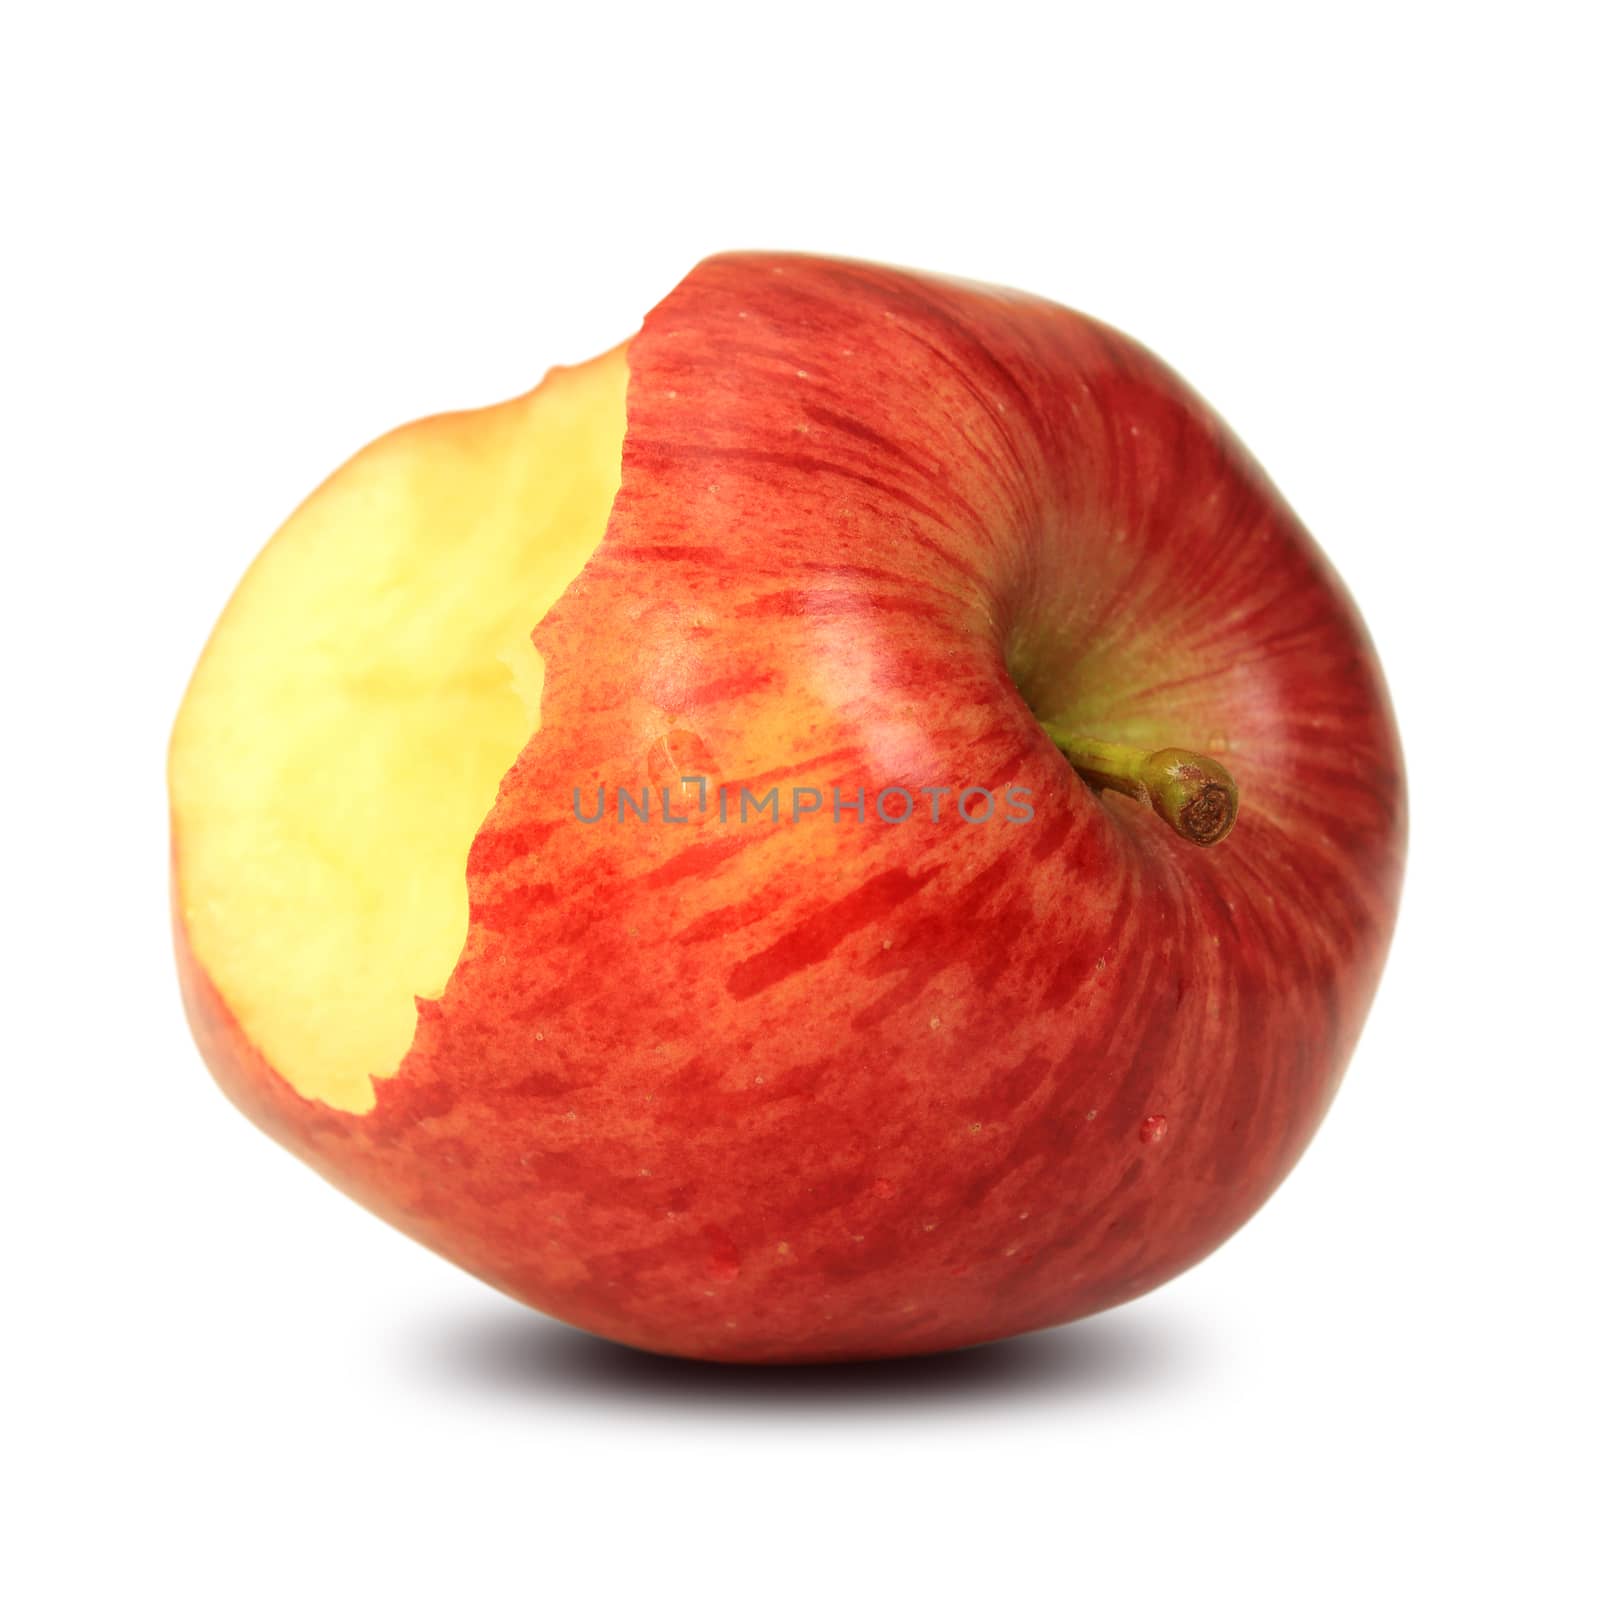 Bitten red apple by foto76